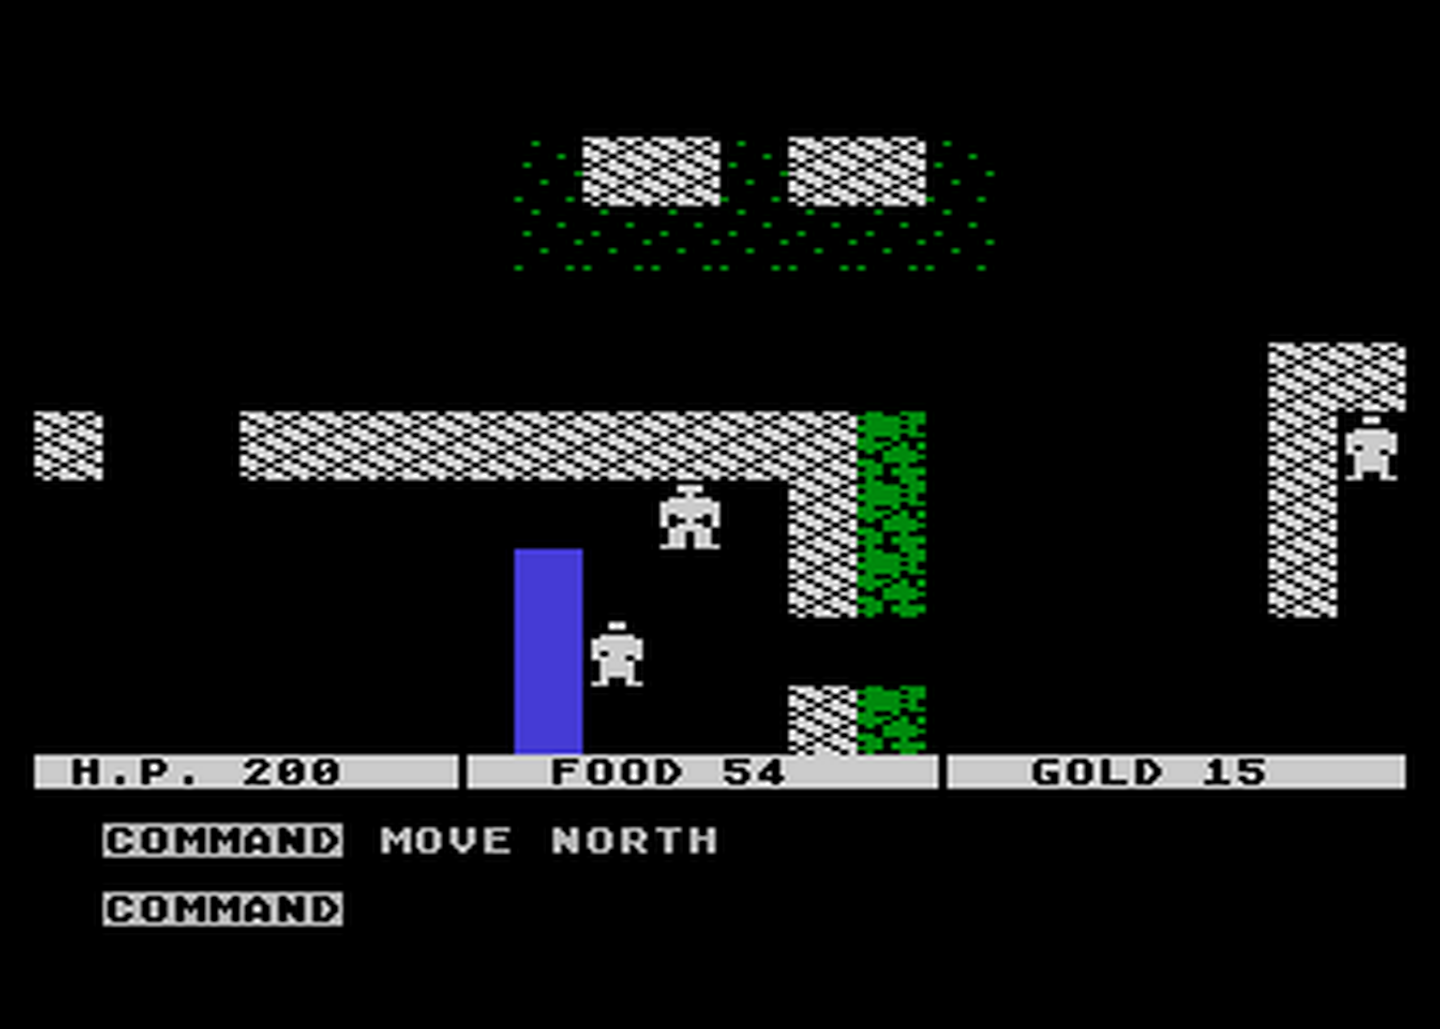 Atari GameBase Questron SSI_-_Strategic_Simulations_Inc 1984